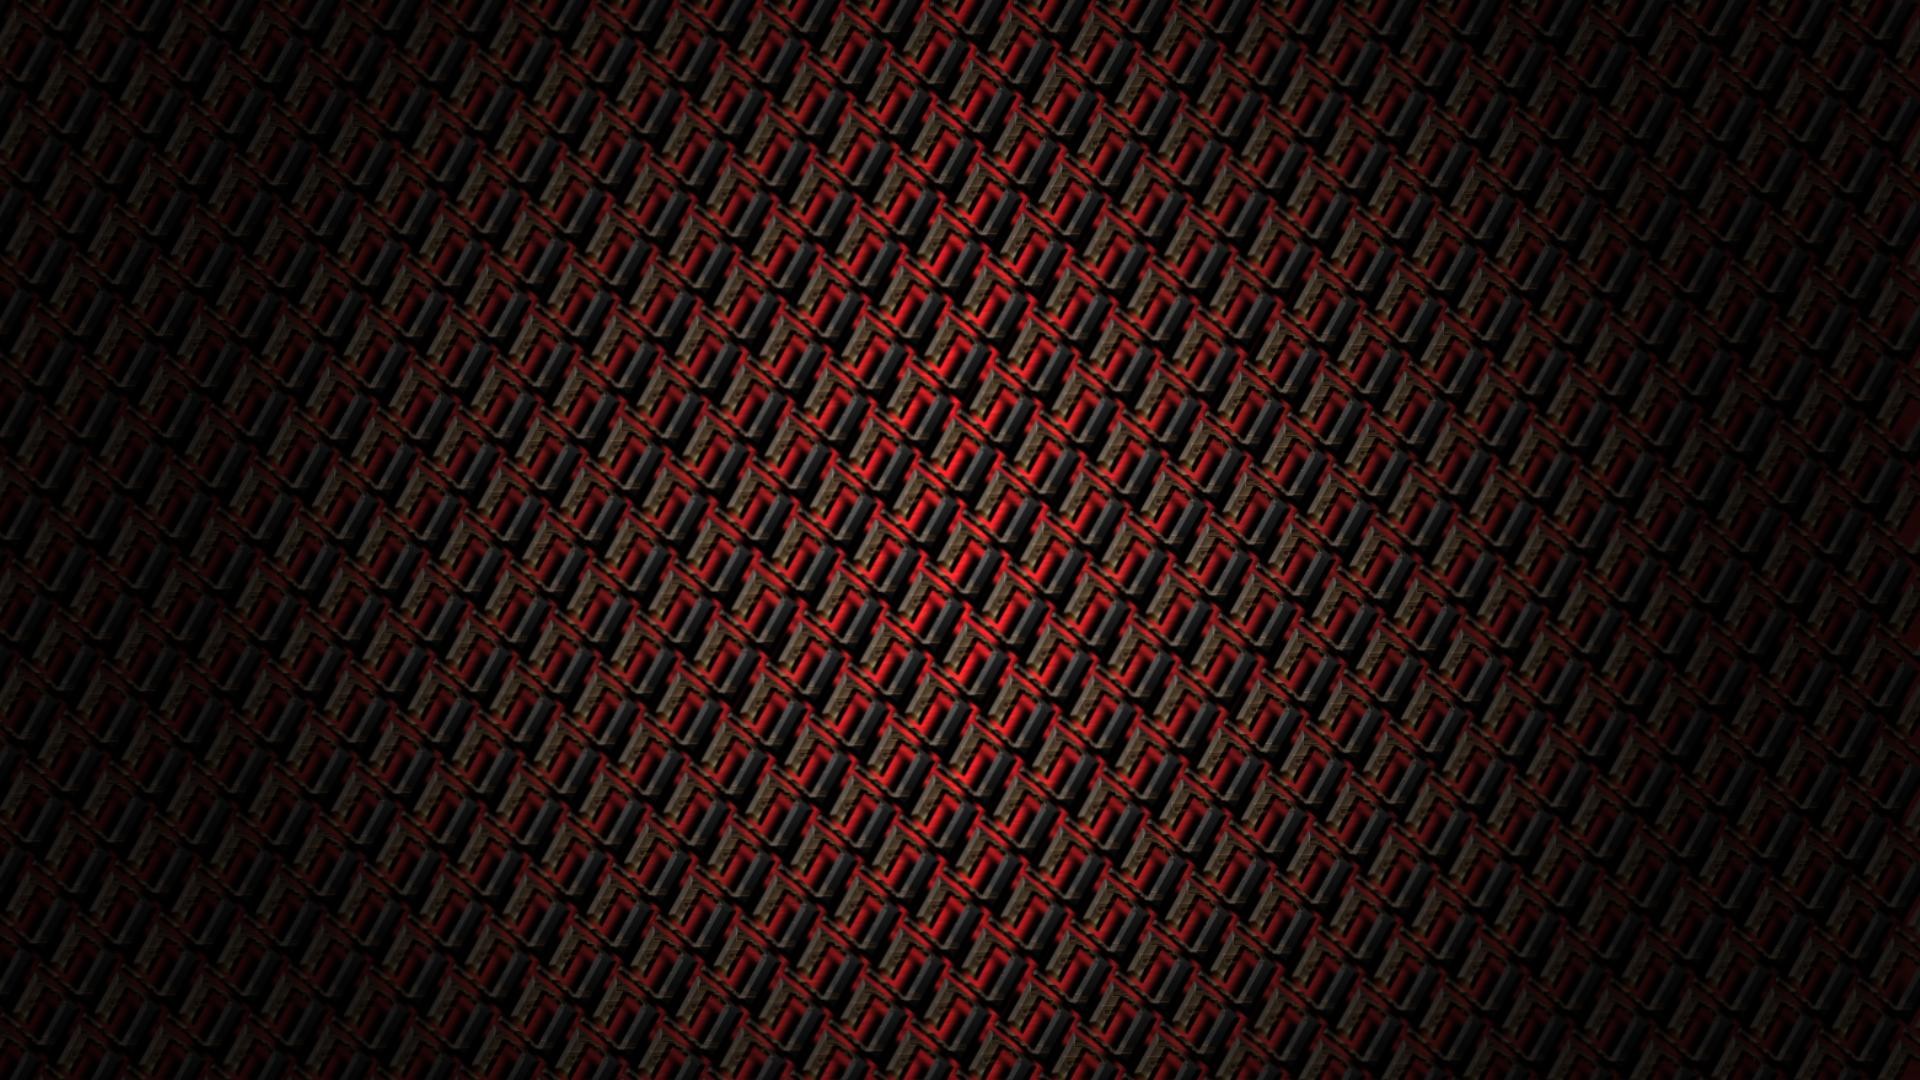 Dark Red Hd Wallpapers 8 Dark Red Hd Wallpapers Pinterest Dark 1920x1080